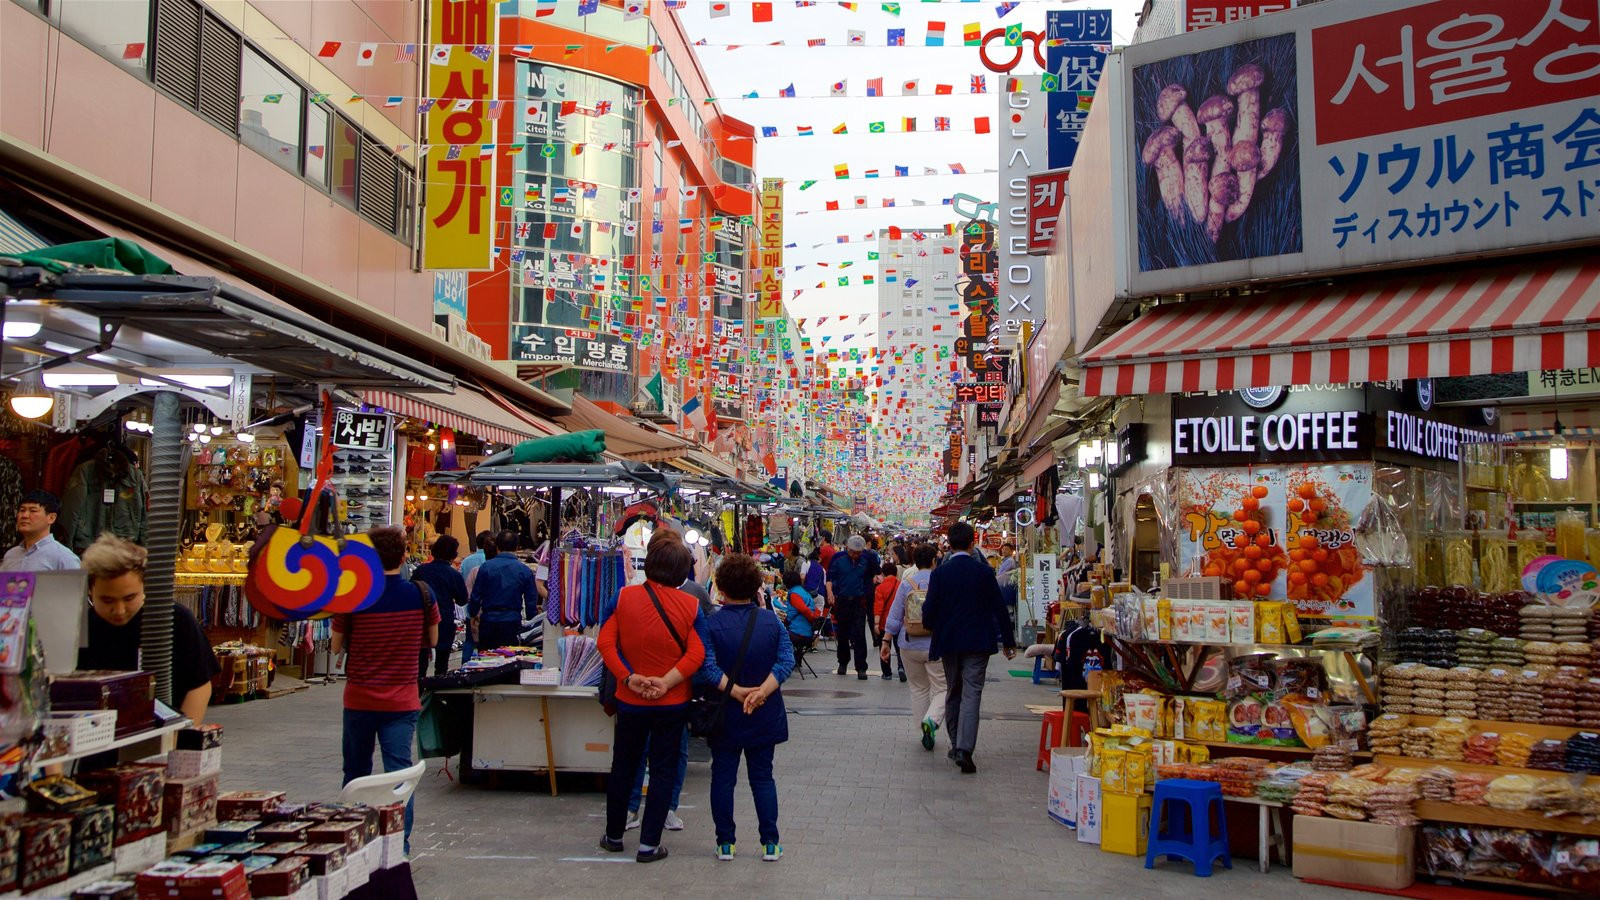 Khám phá chợ Dongdaemun - khu chợ sầm uất bậc nhất Hàn Quốc